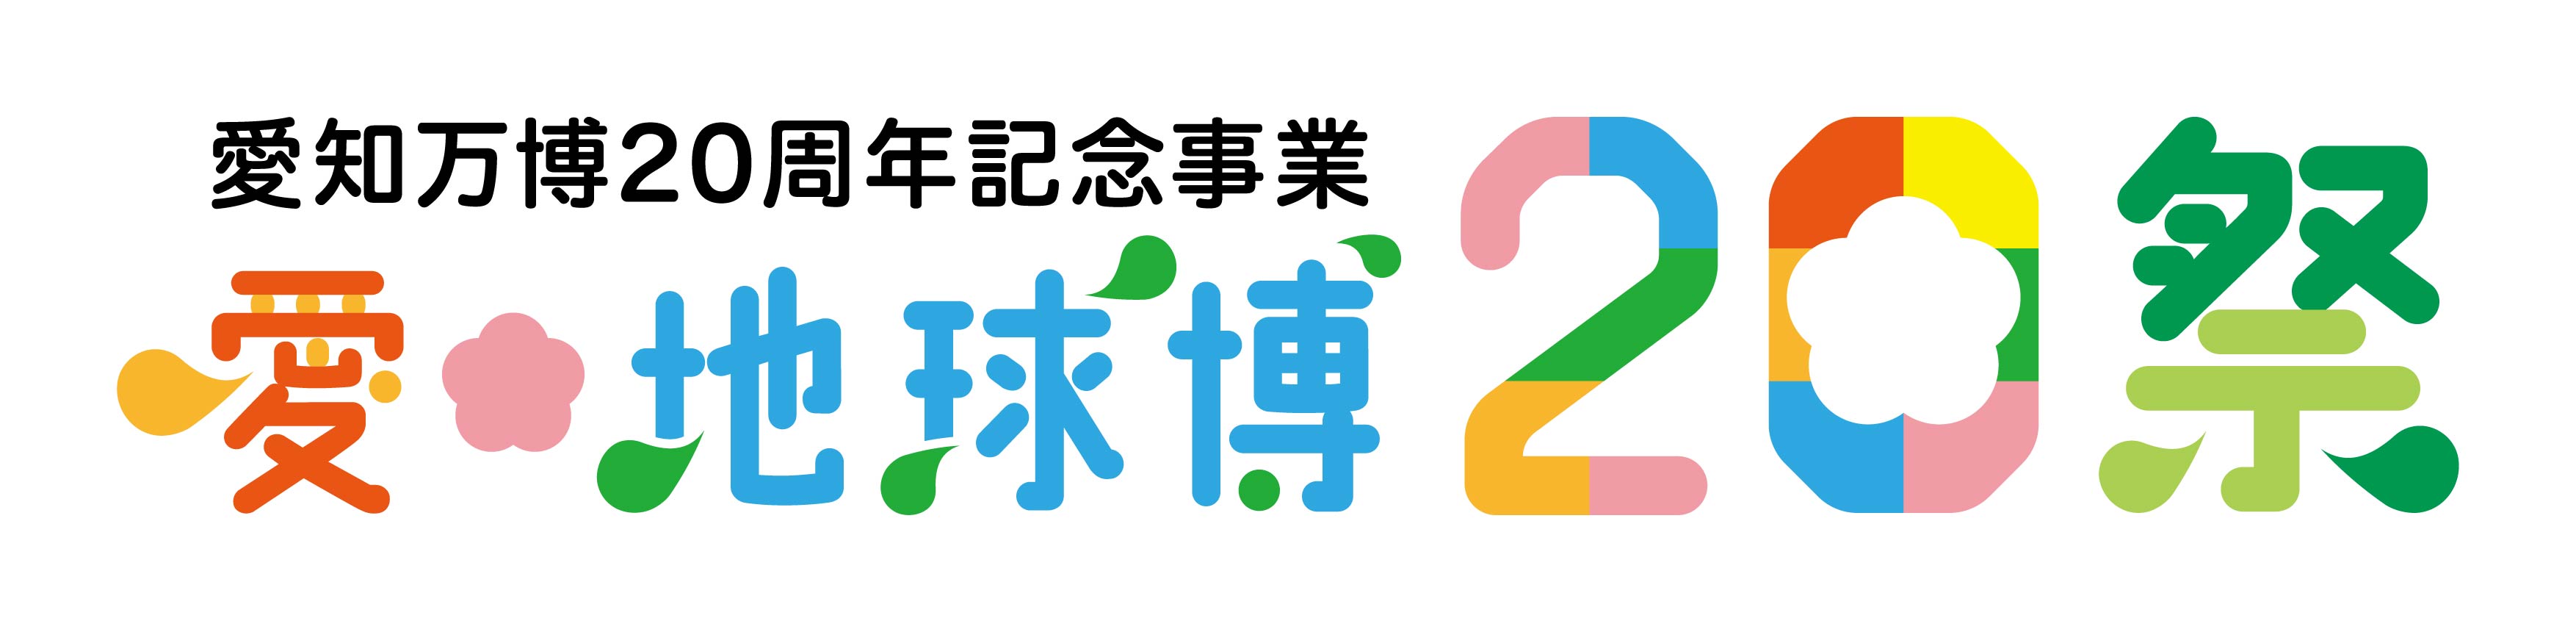 「愛・地球博20祭」ロゴイメージ